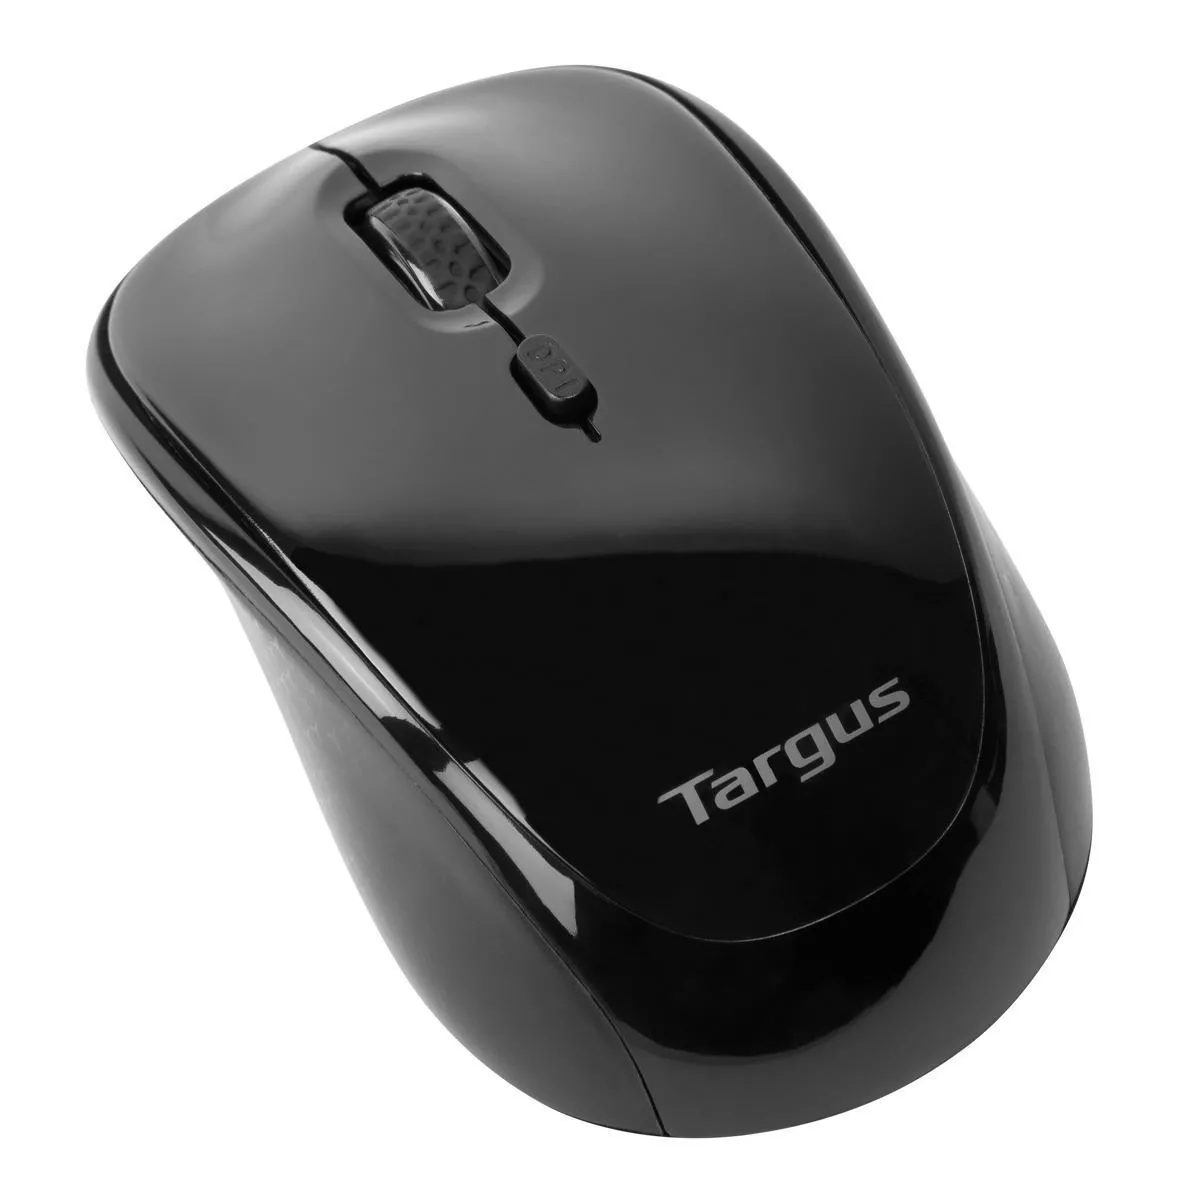 Vente TARGUS Souris Blue Trace sans fil USB Utilisation Targus au meilleur prix - visuel 8